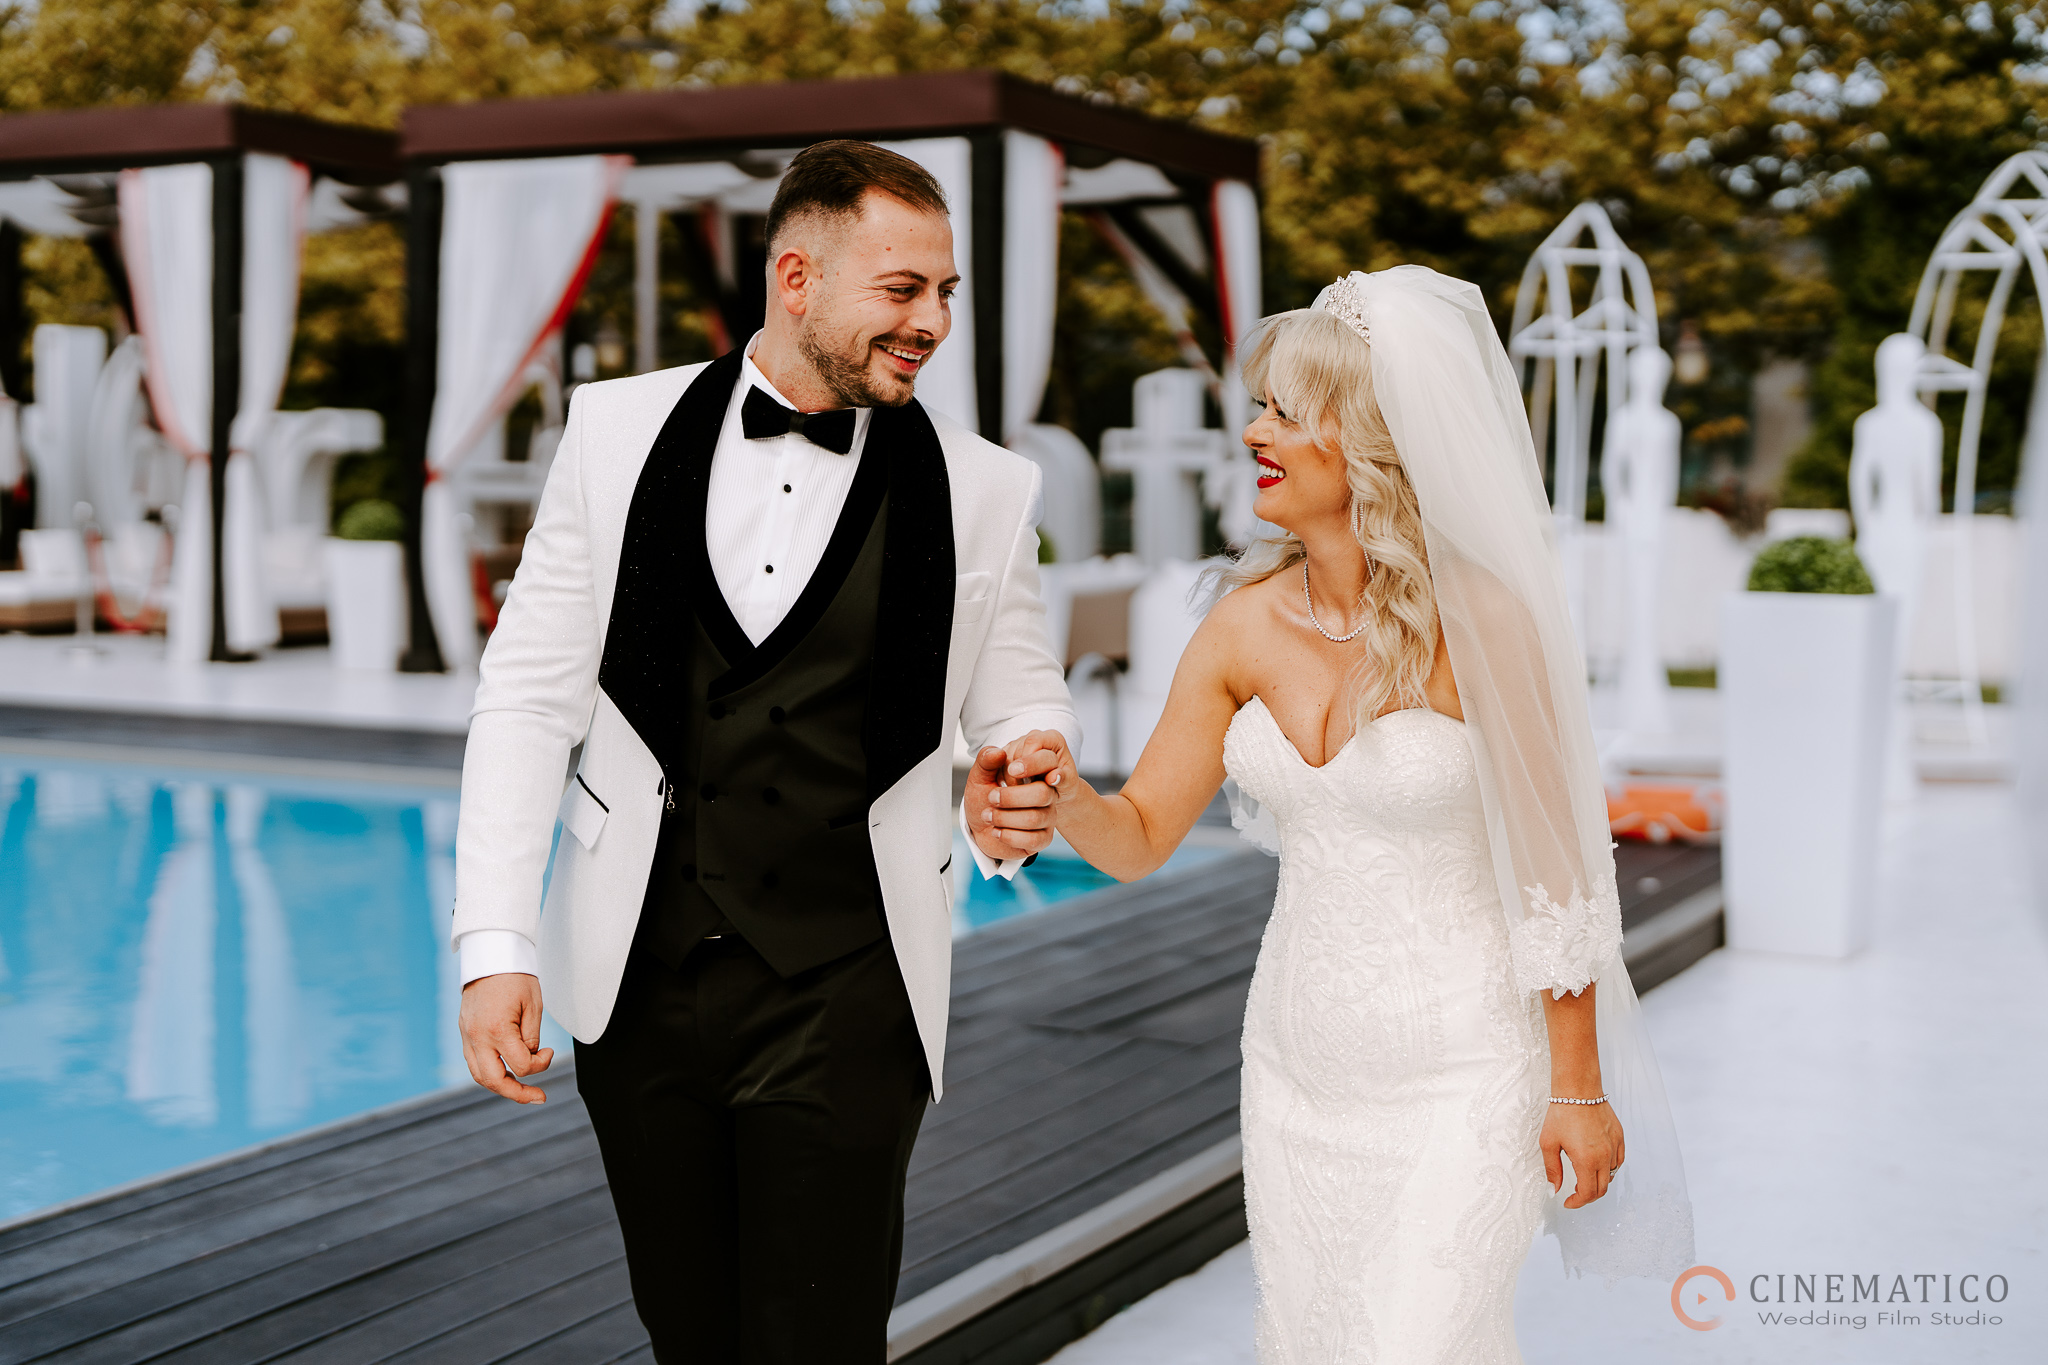 Cauti un fotograf profesionist pentru nunta ta